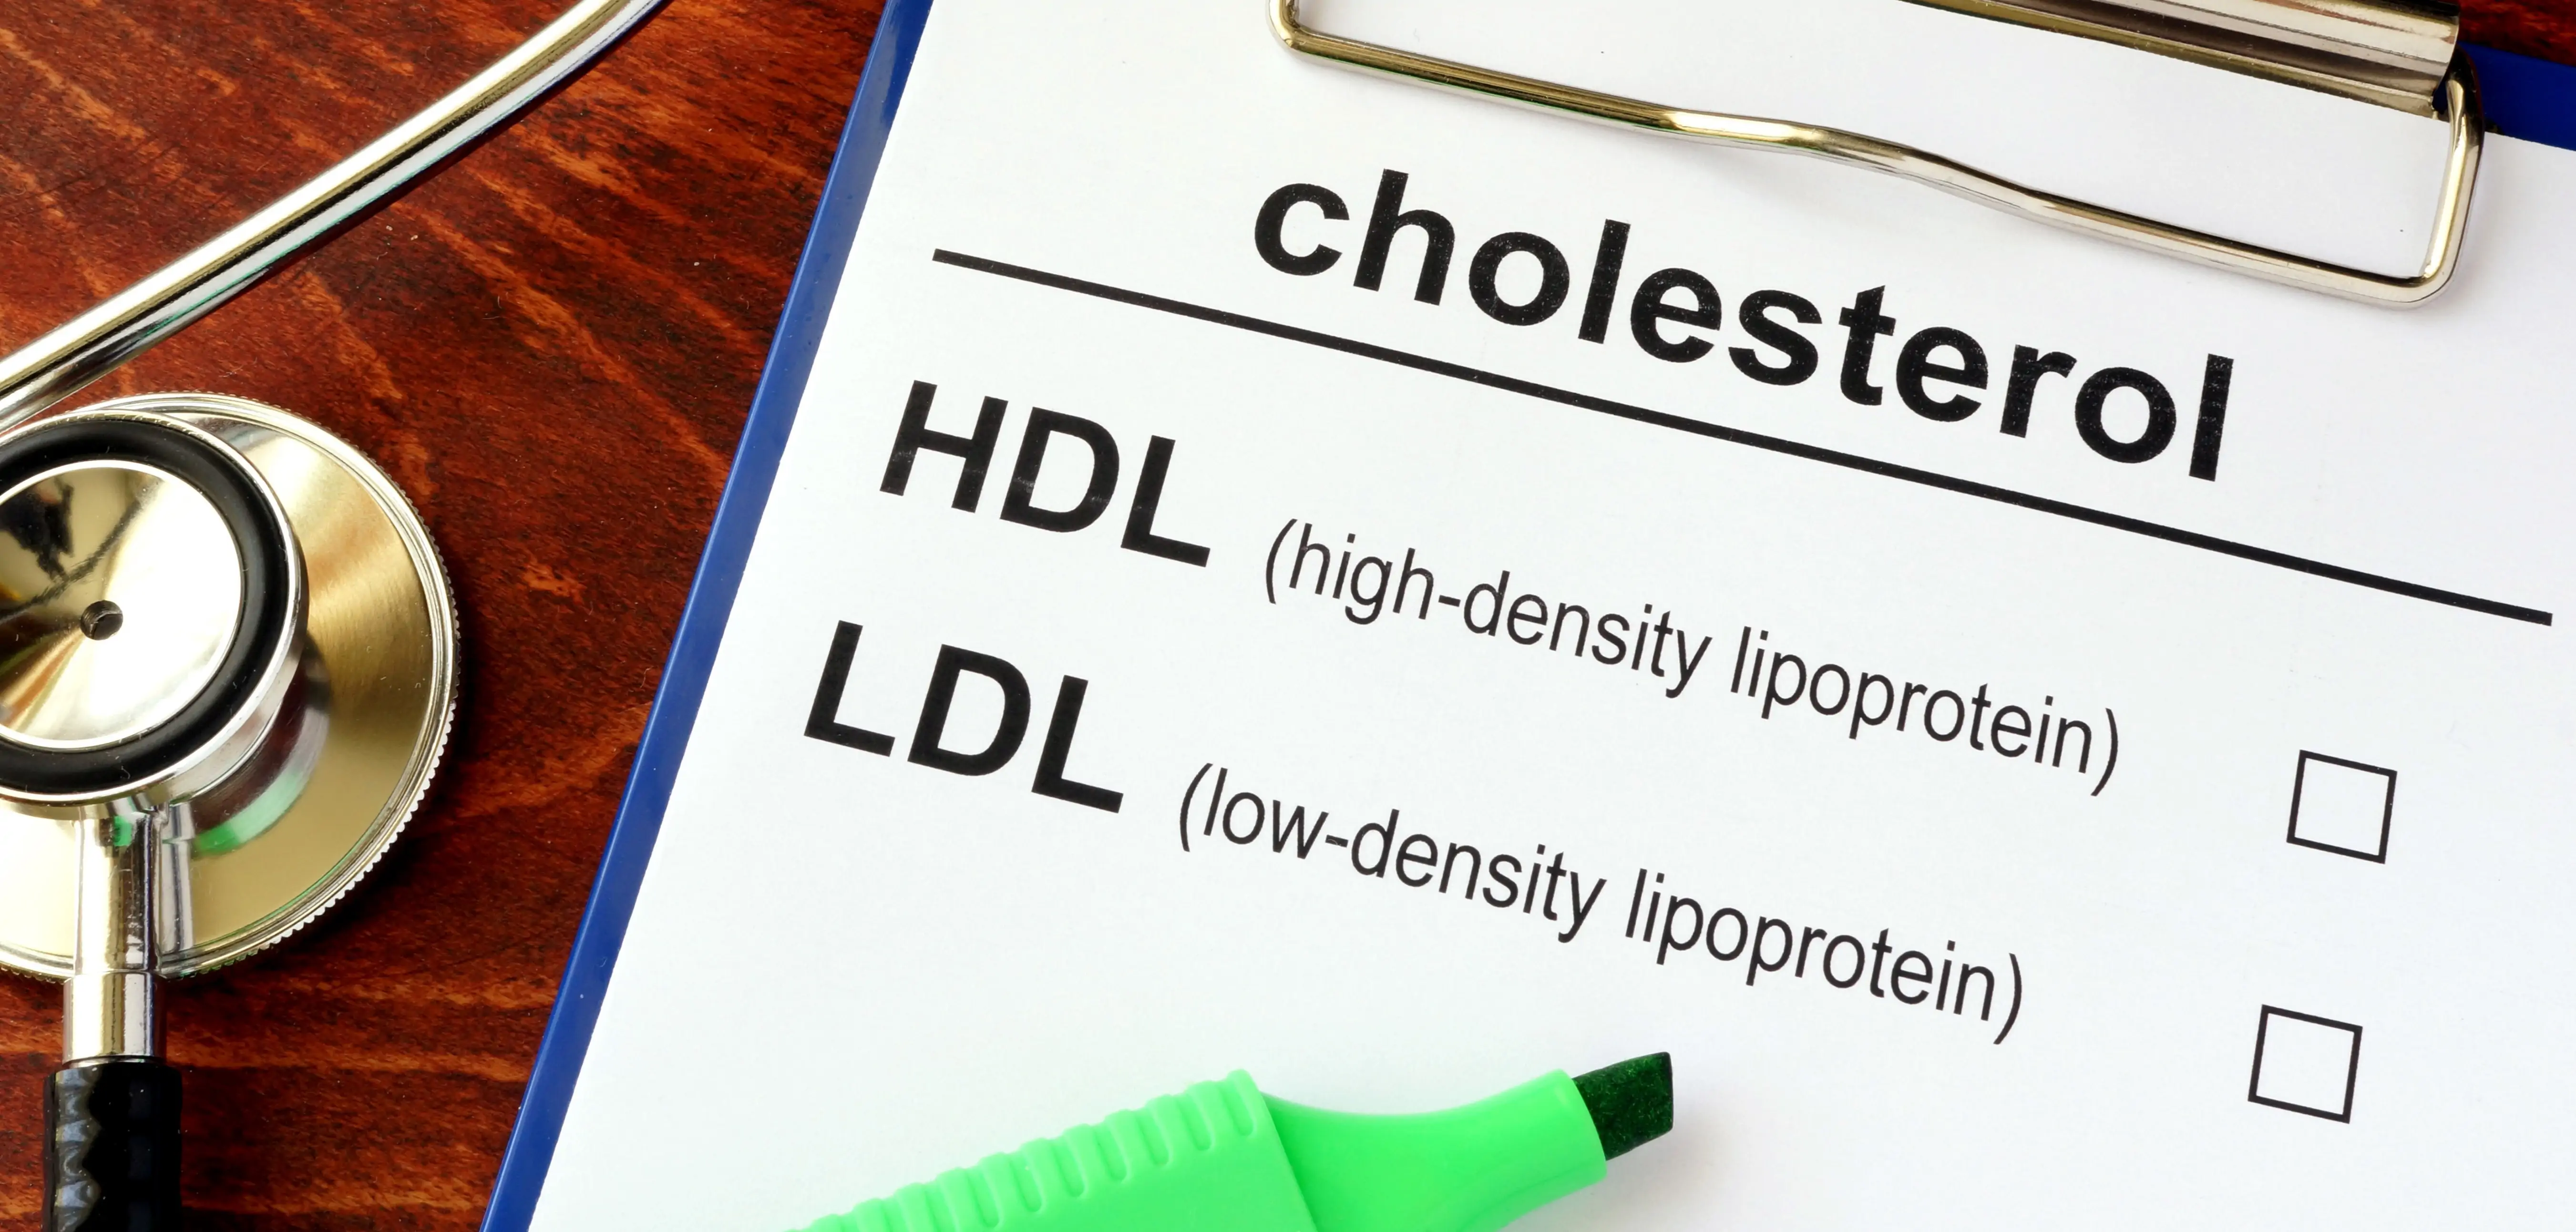 colesterolo buono hdl e cattivo ldl